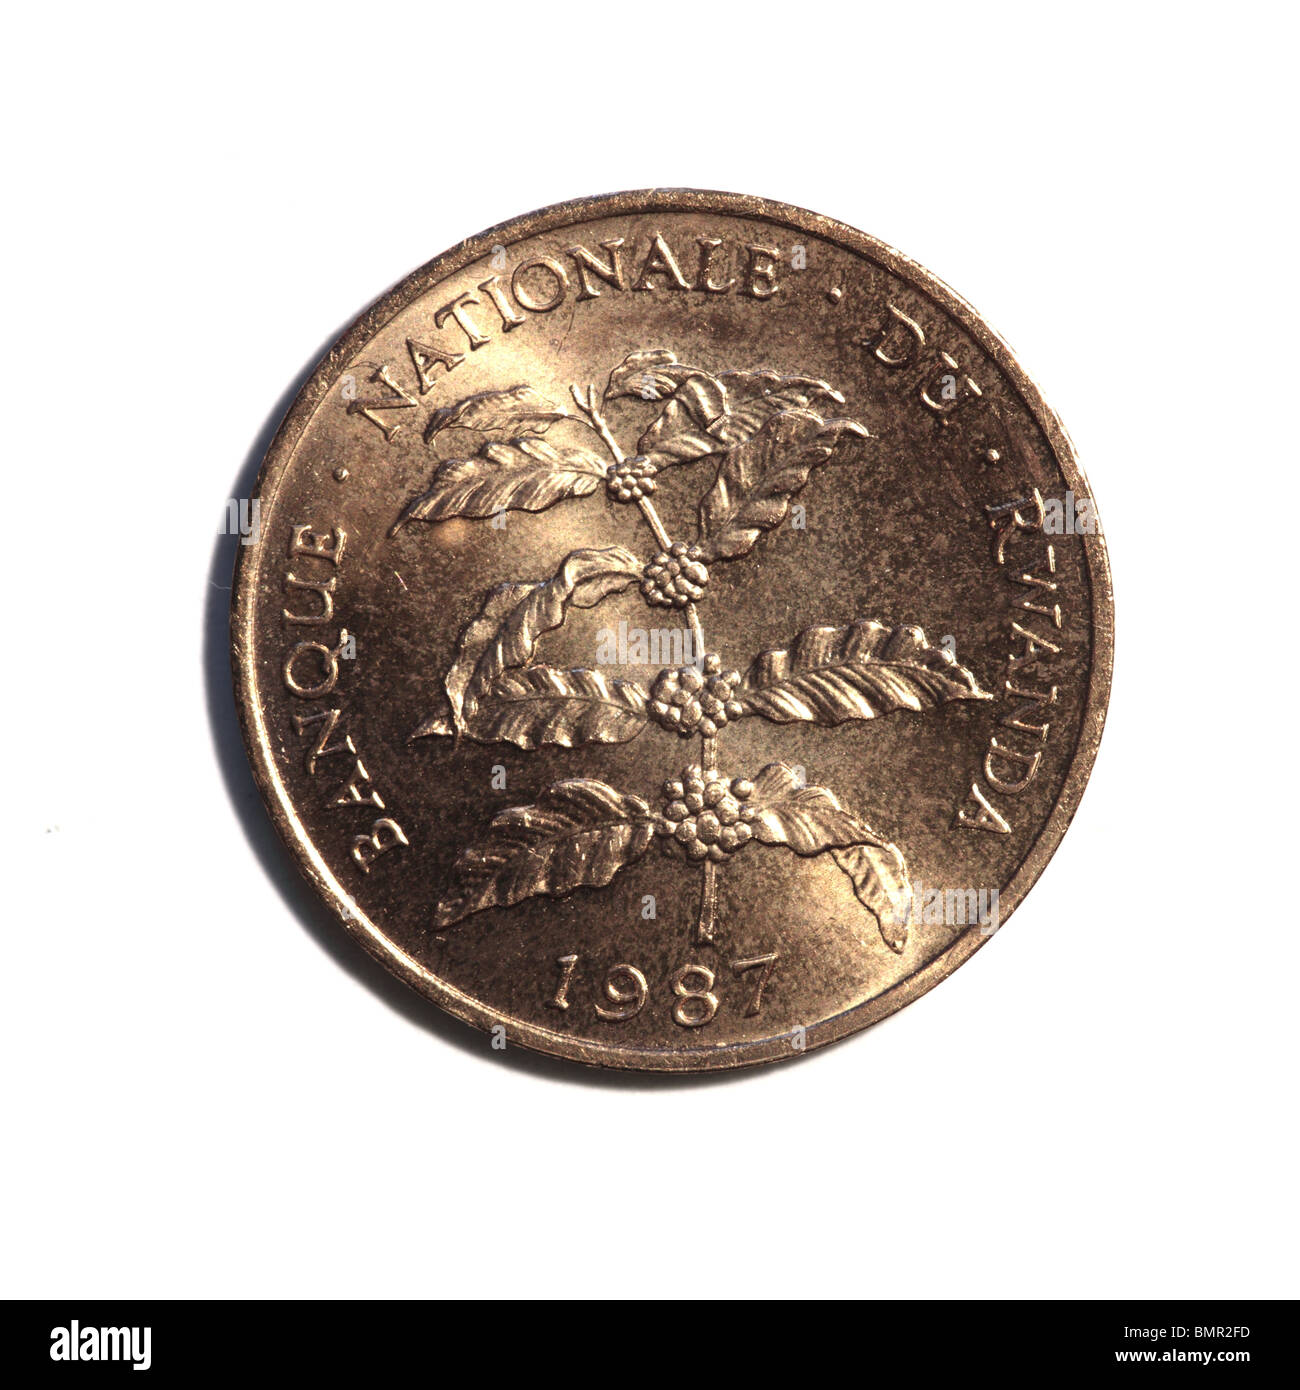 Rwandan coin Stock Photo